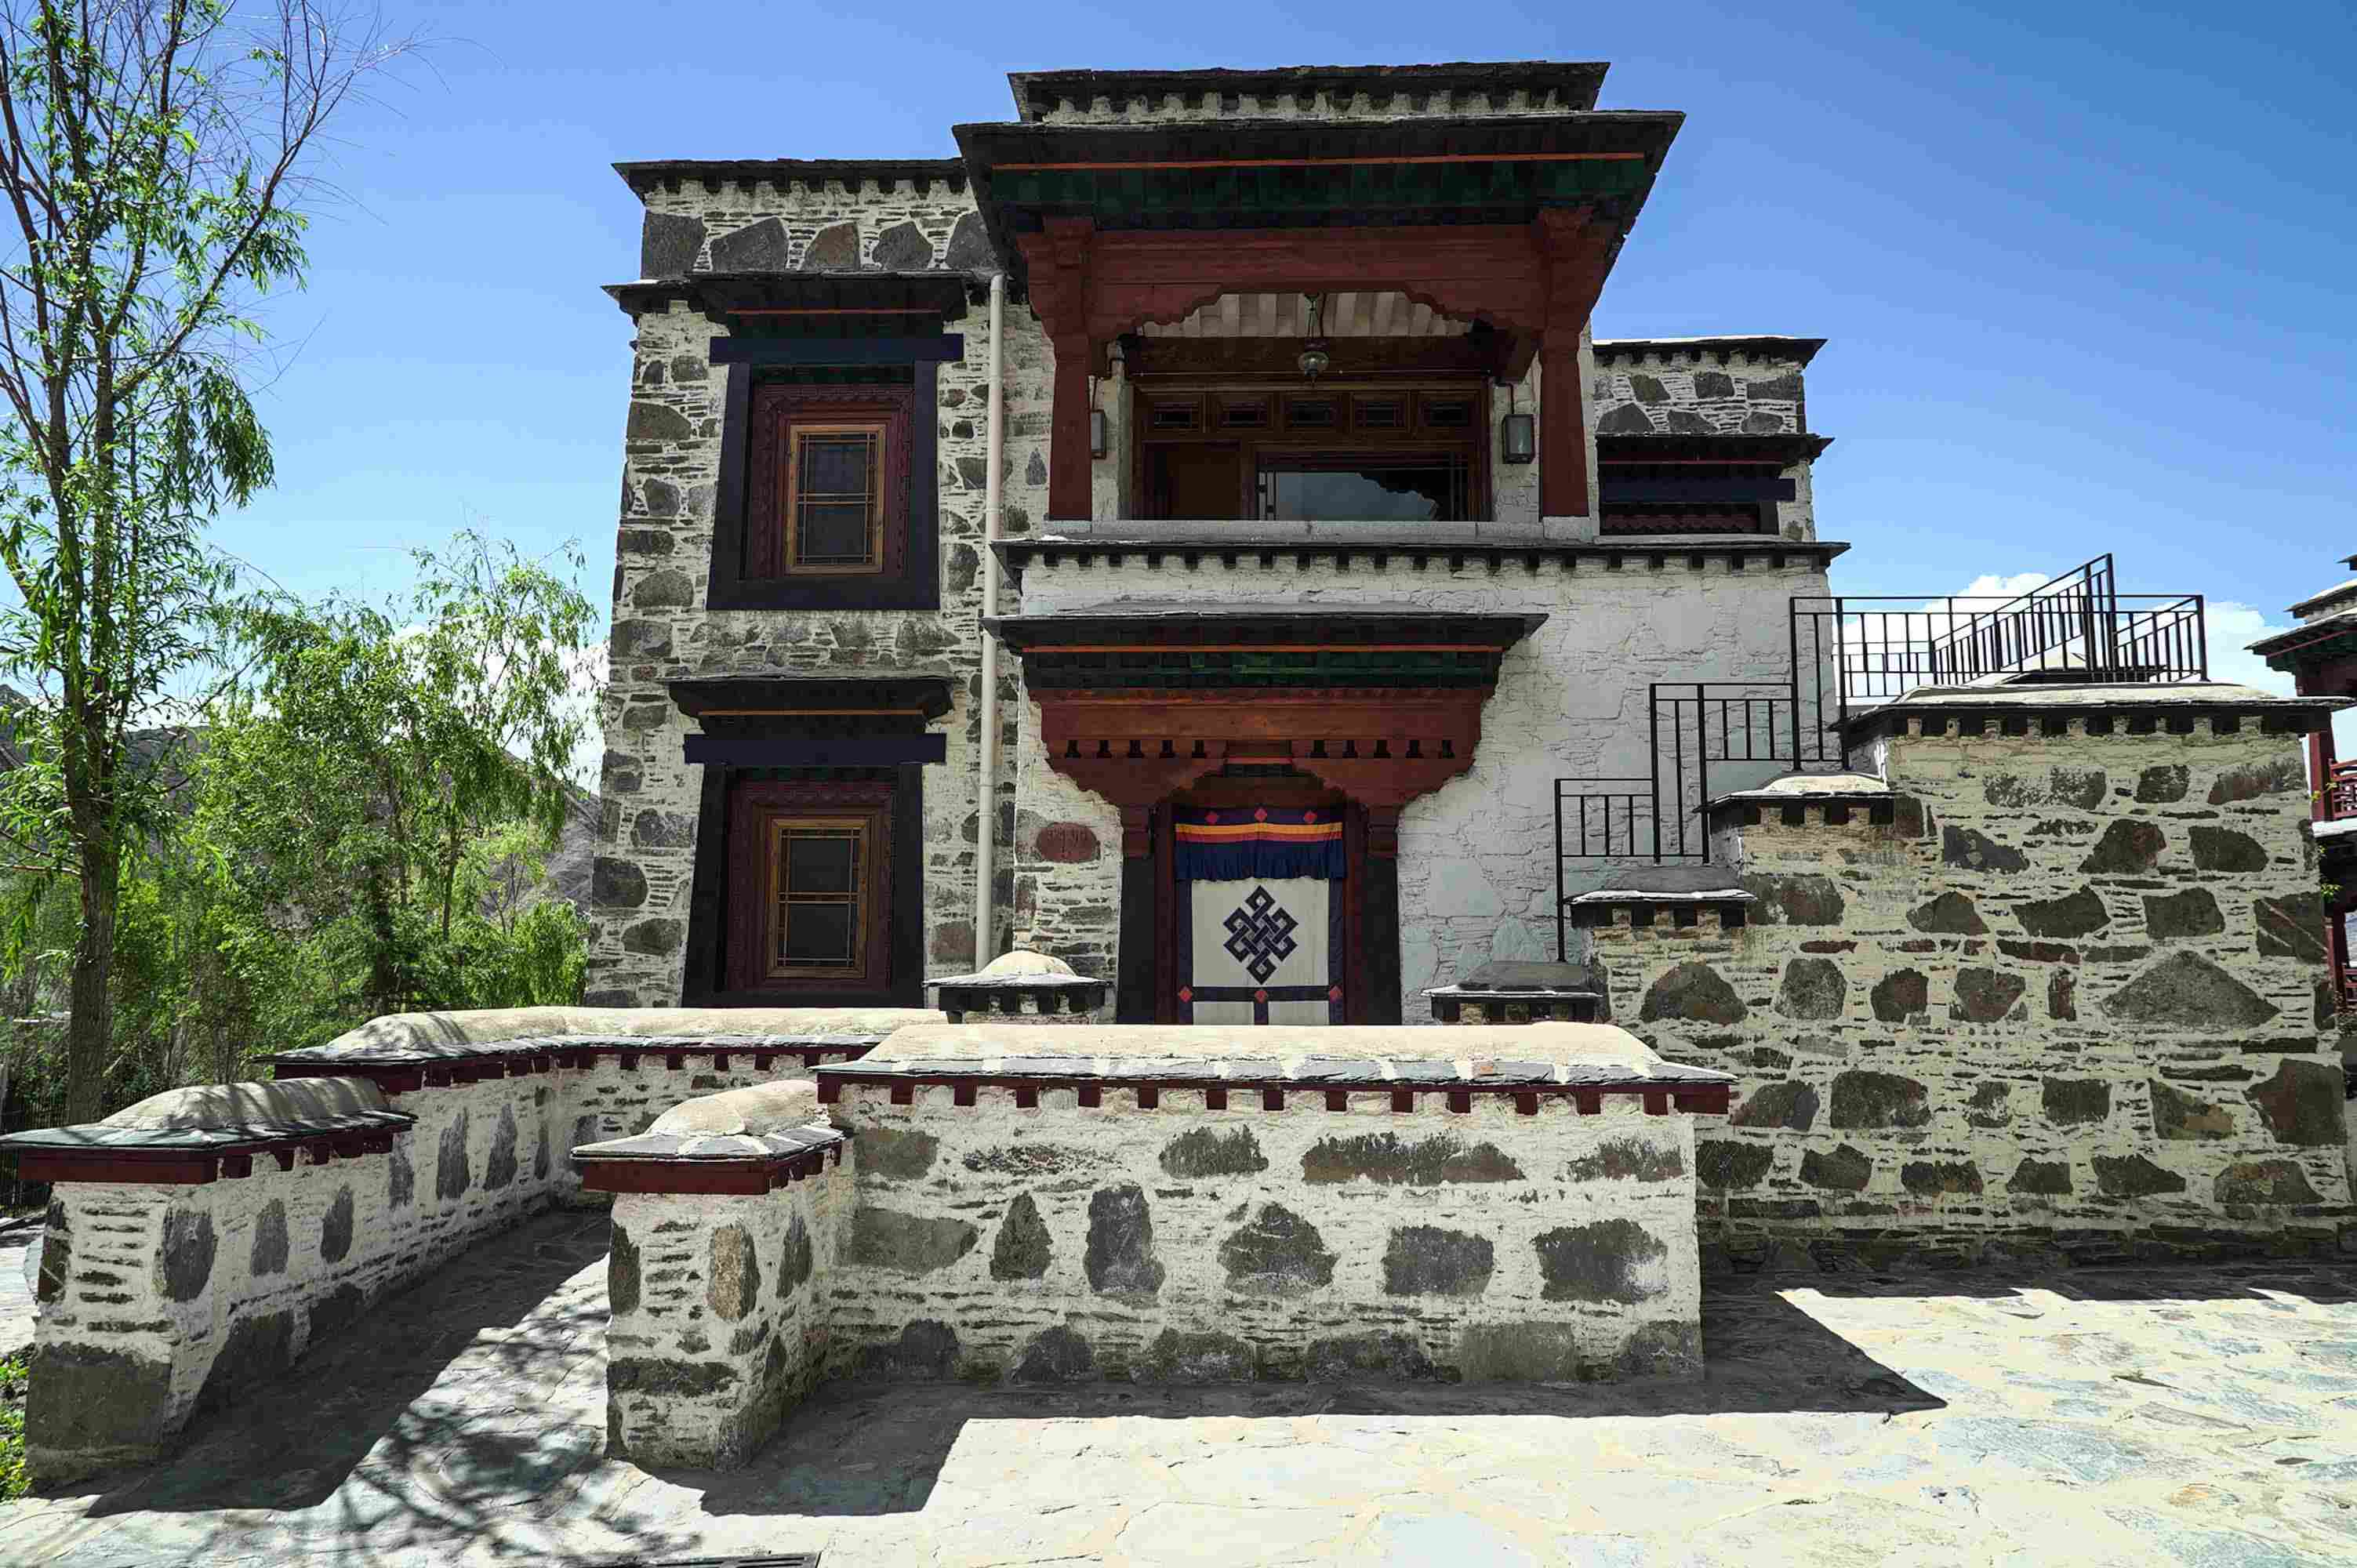 【边疆时空】霍巍 | 西藏高原腹心地带的文明曙光：拉萨曲贡遗址与墓地的发现-专家观点